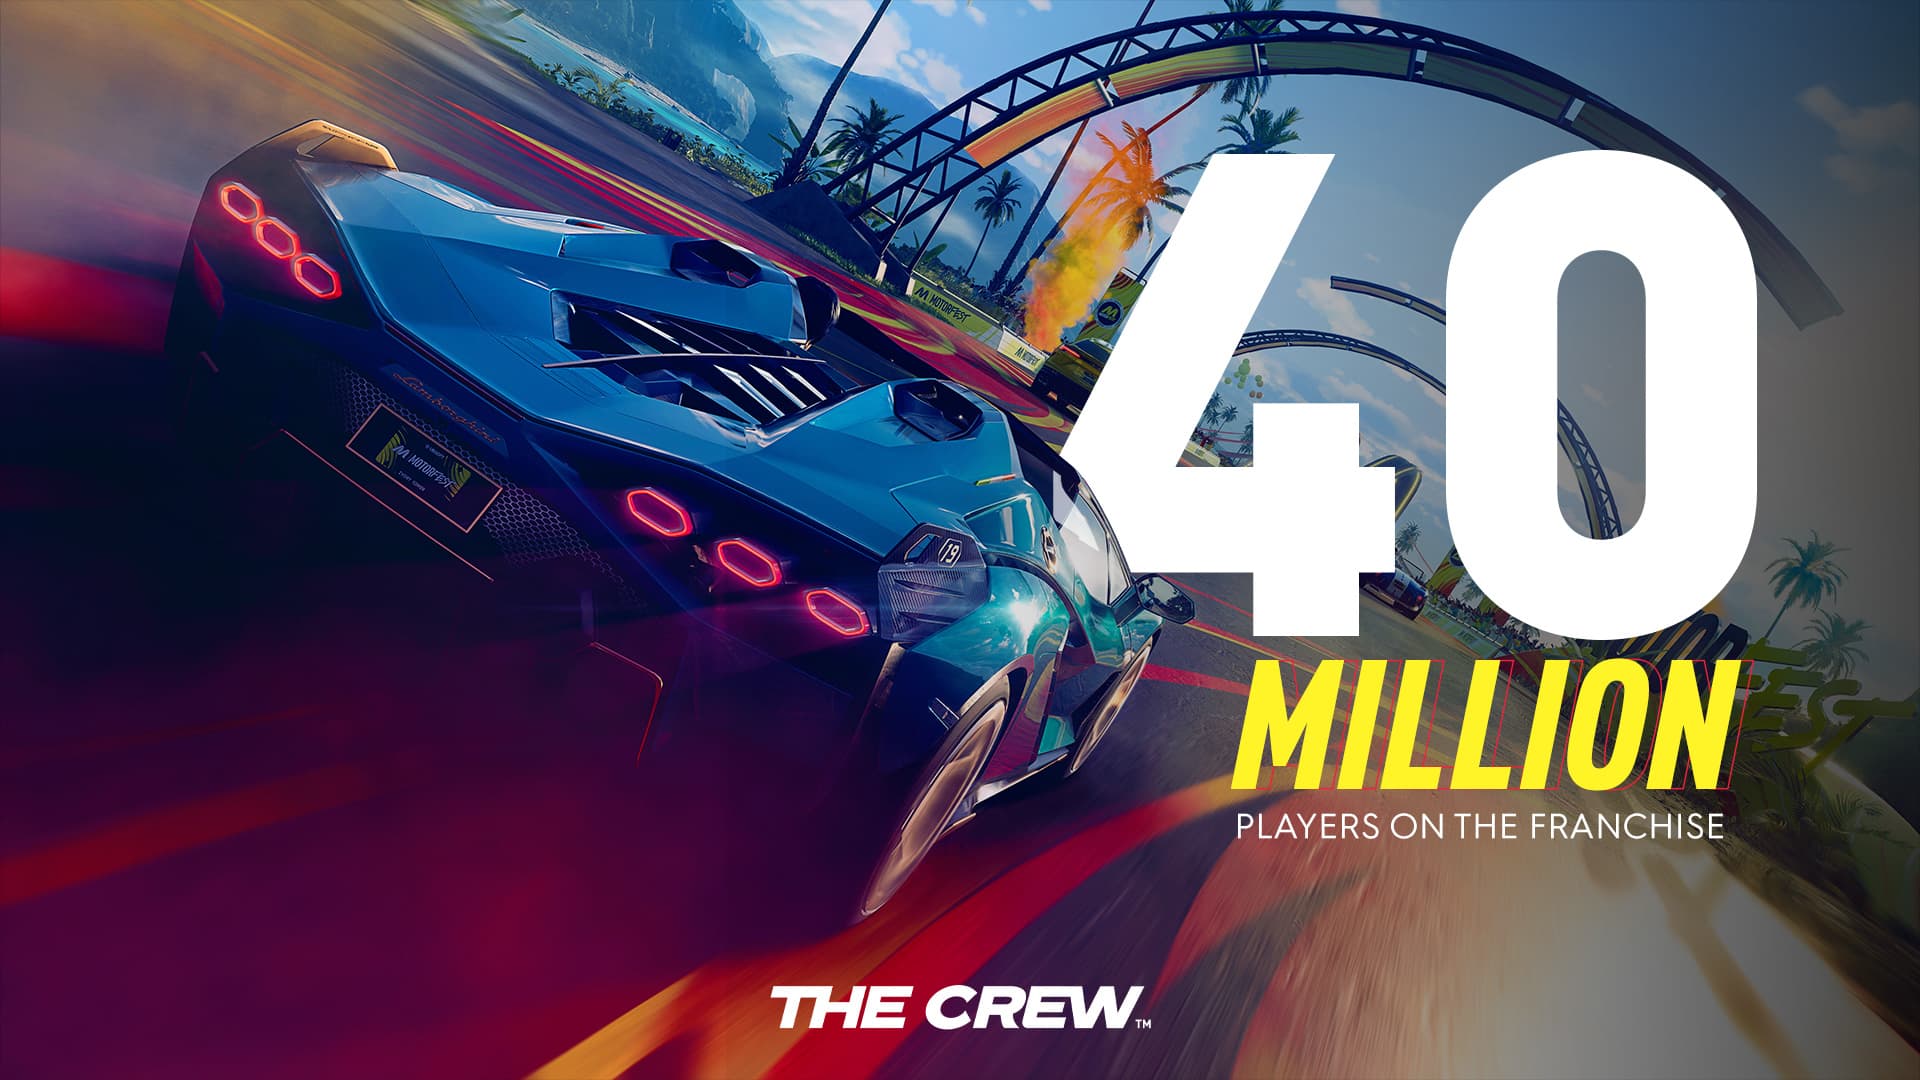 Serie The Crew supera los 40 millones de jugadores